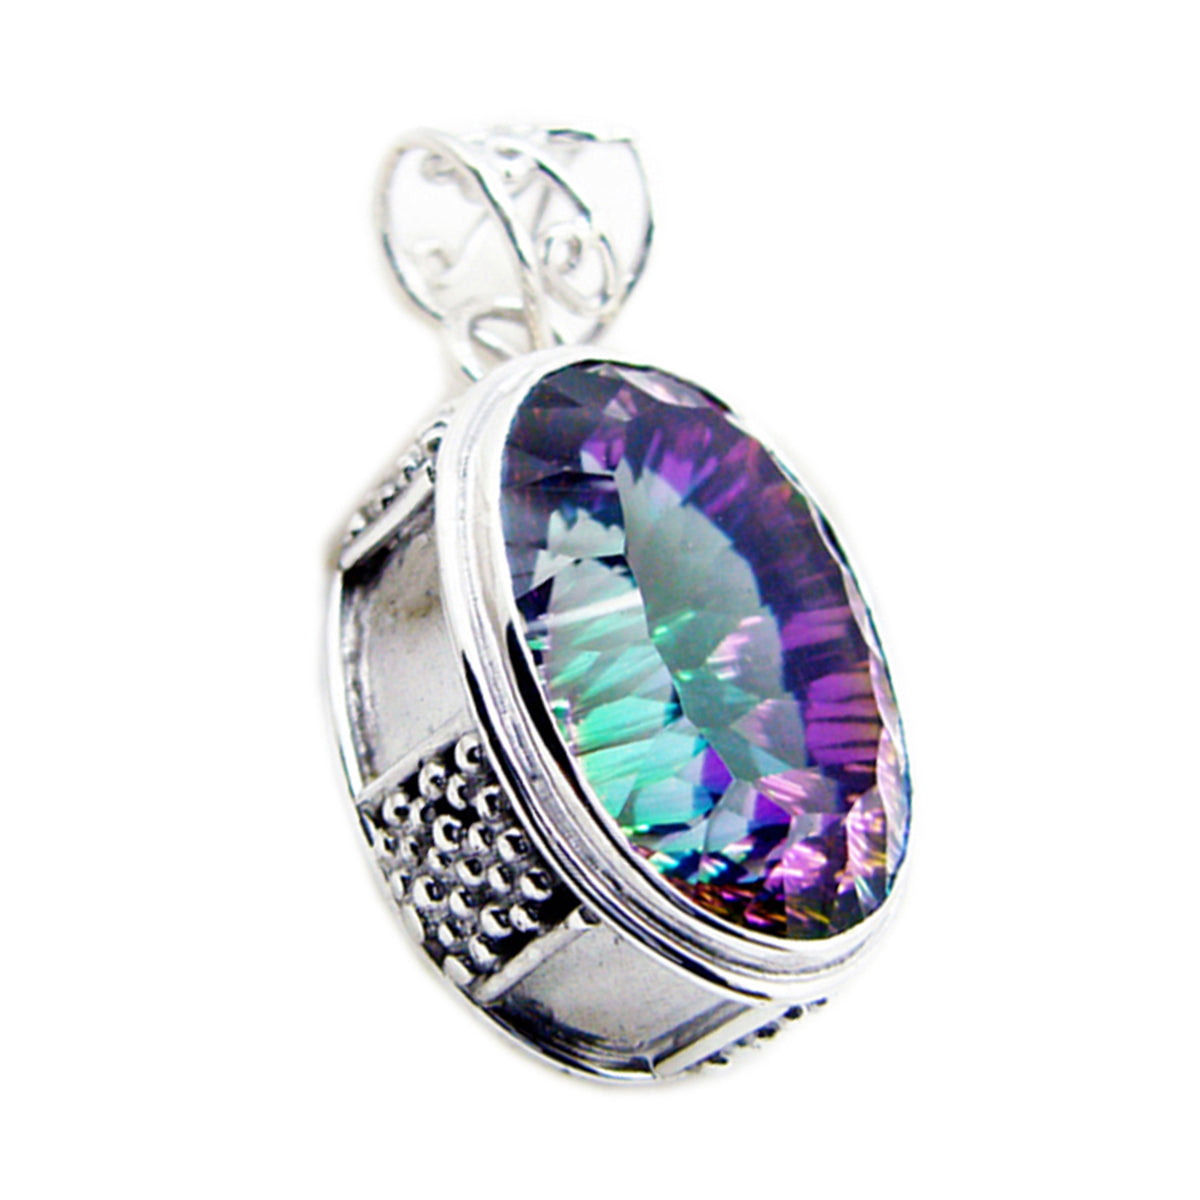 Riyo smashing pierre précieuse ovale à facettes multicolore quartz mystique pendentif en argent sterling cadeau pour noël